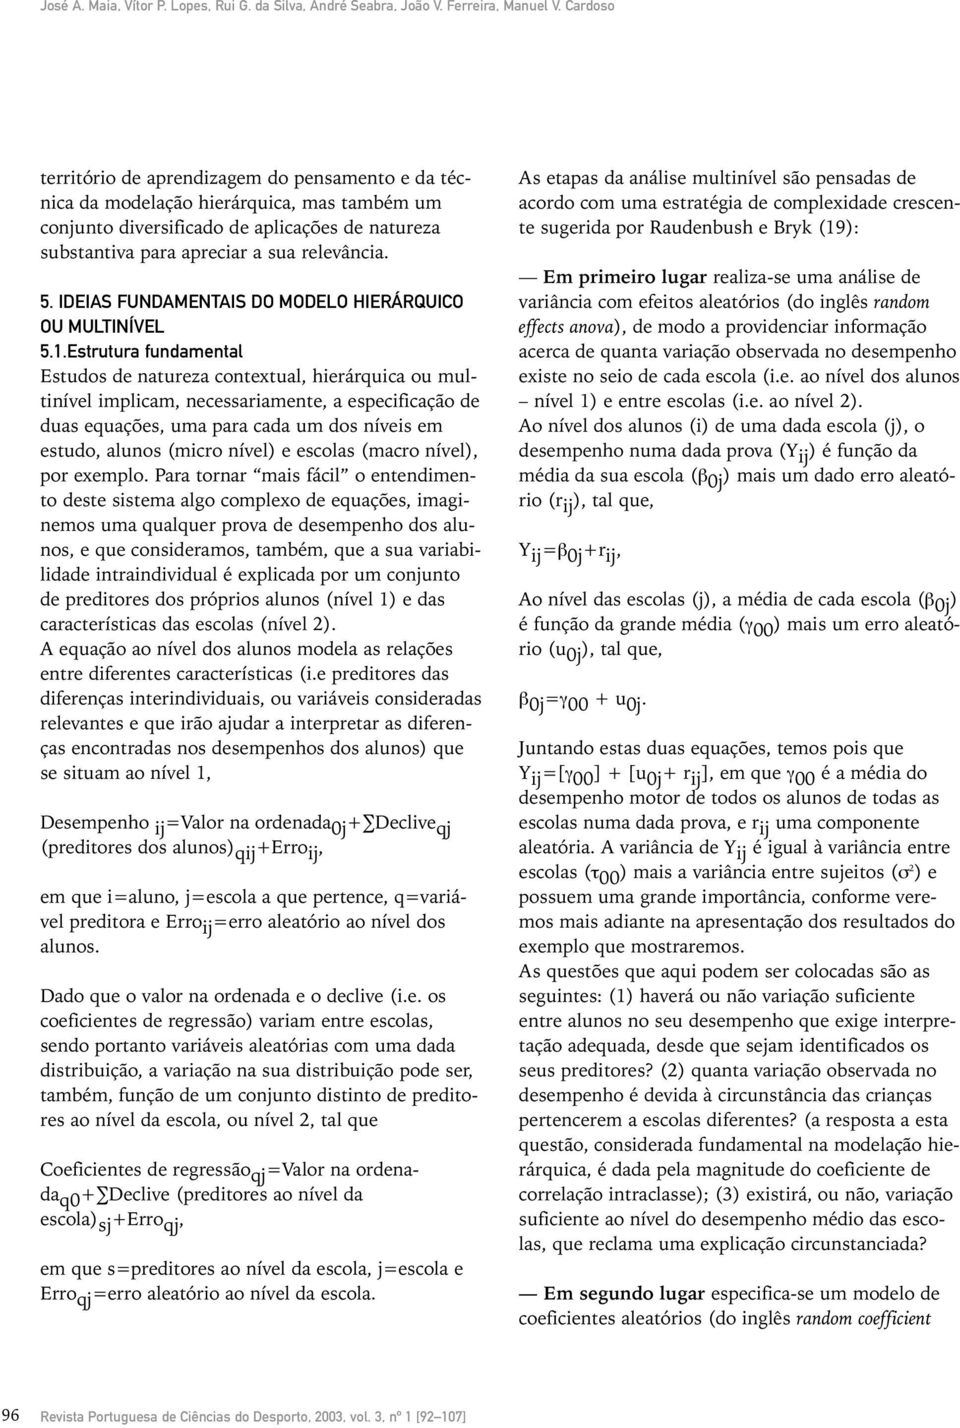 IDEIAS FUNDAMENTAIS DO MODELO HIERÁRQUICO OU MULTINÍVEL 5.1.